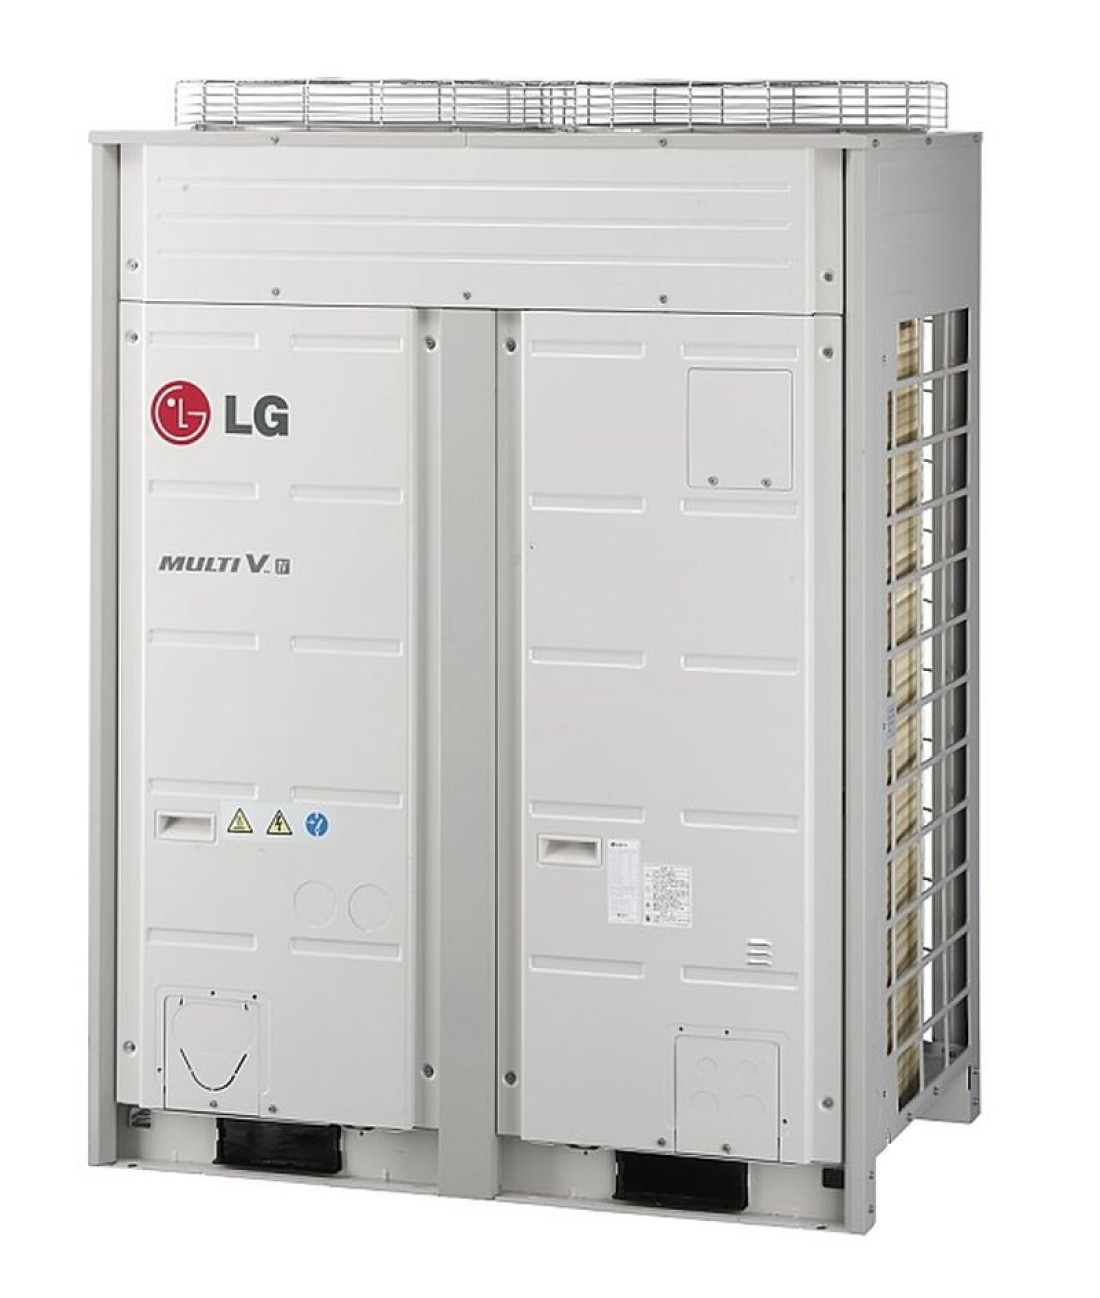 Nowy katalog systemów klimatyzacji VRF - LG Multi V serii IV już dostępny!